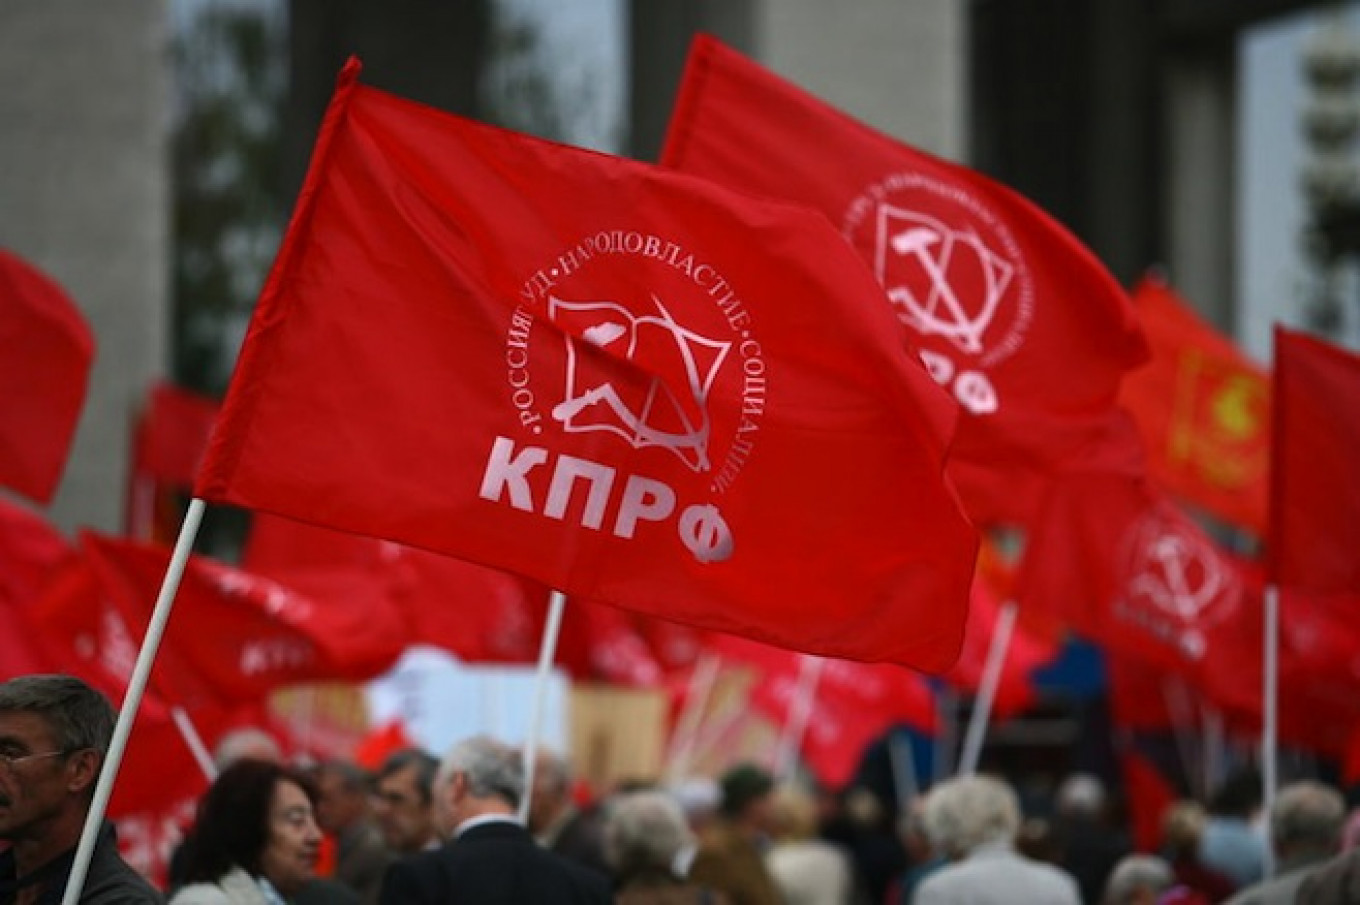 Les russes de France ont voté pour le Parti communiste